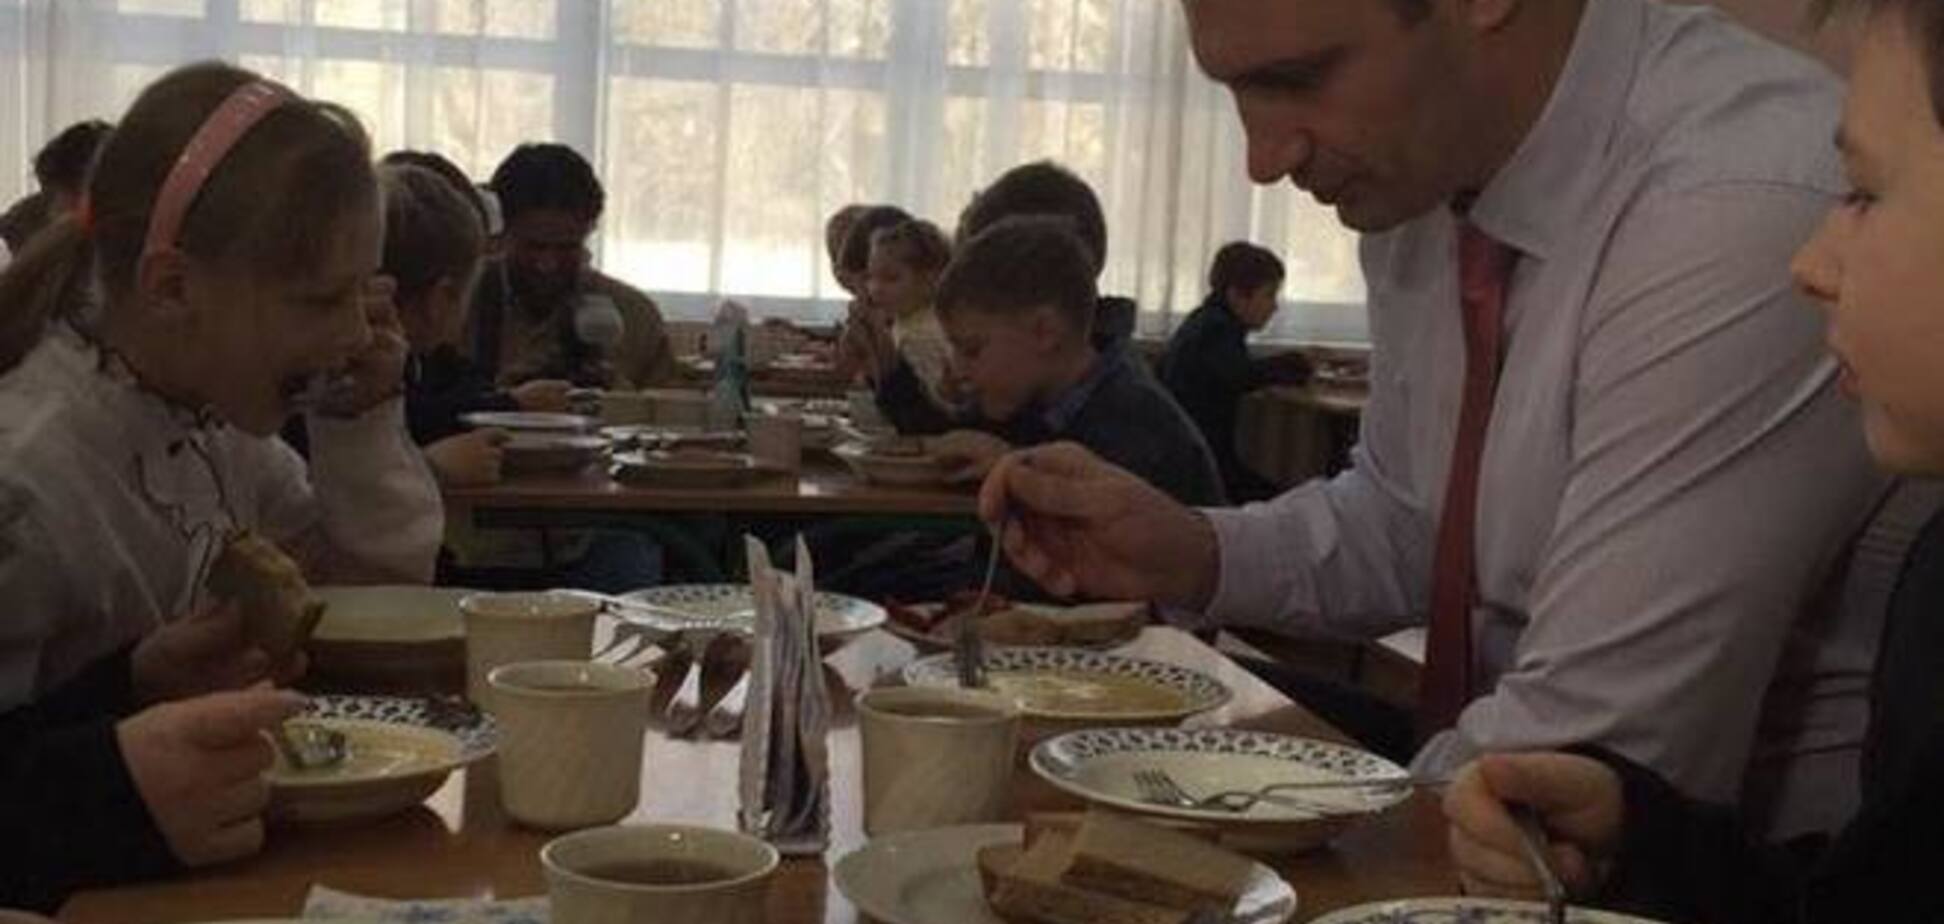 Кличко позавтракал в школьной столовой: опубликованы фото